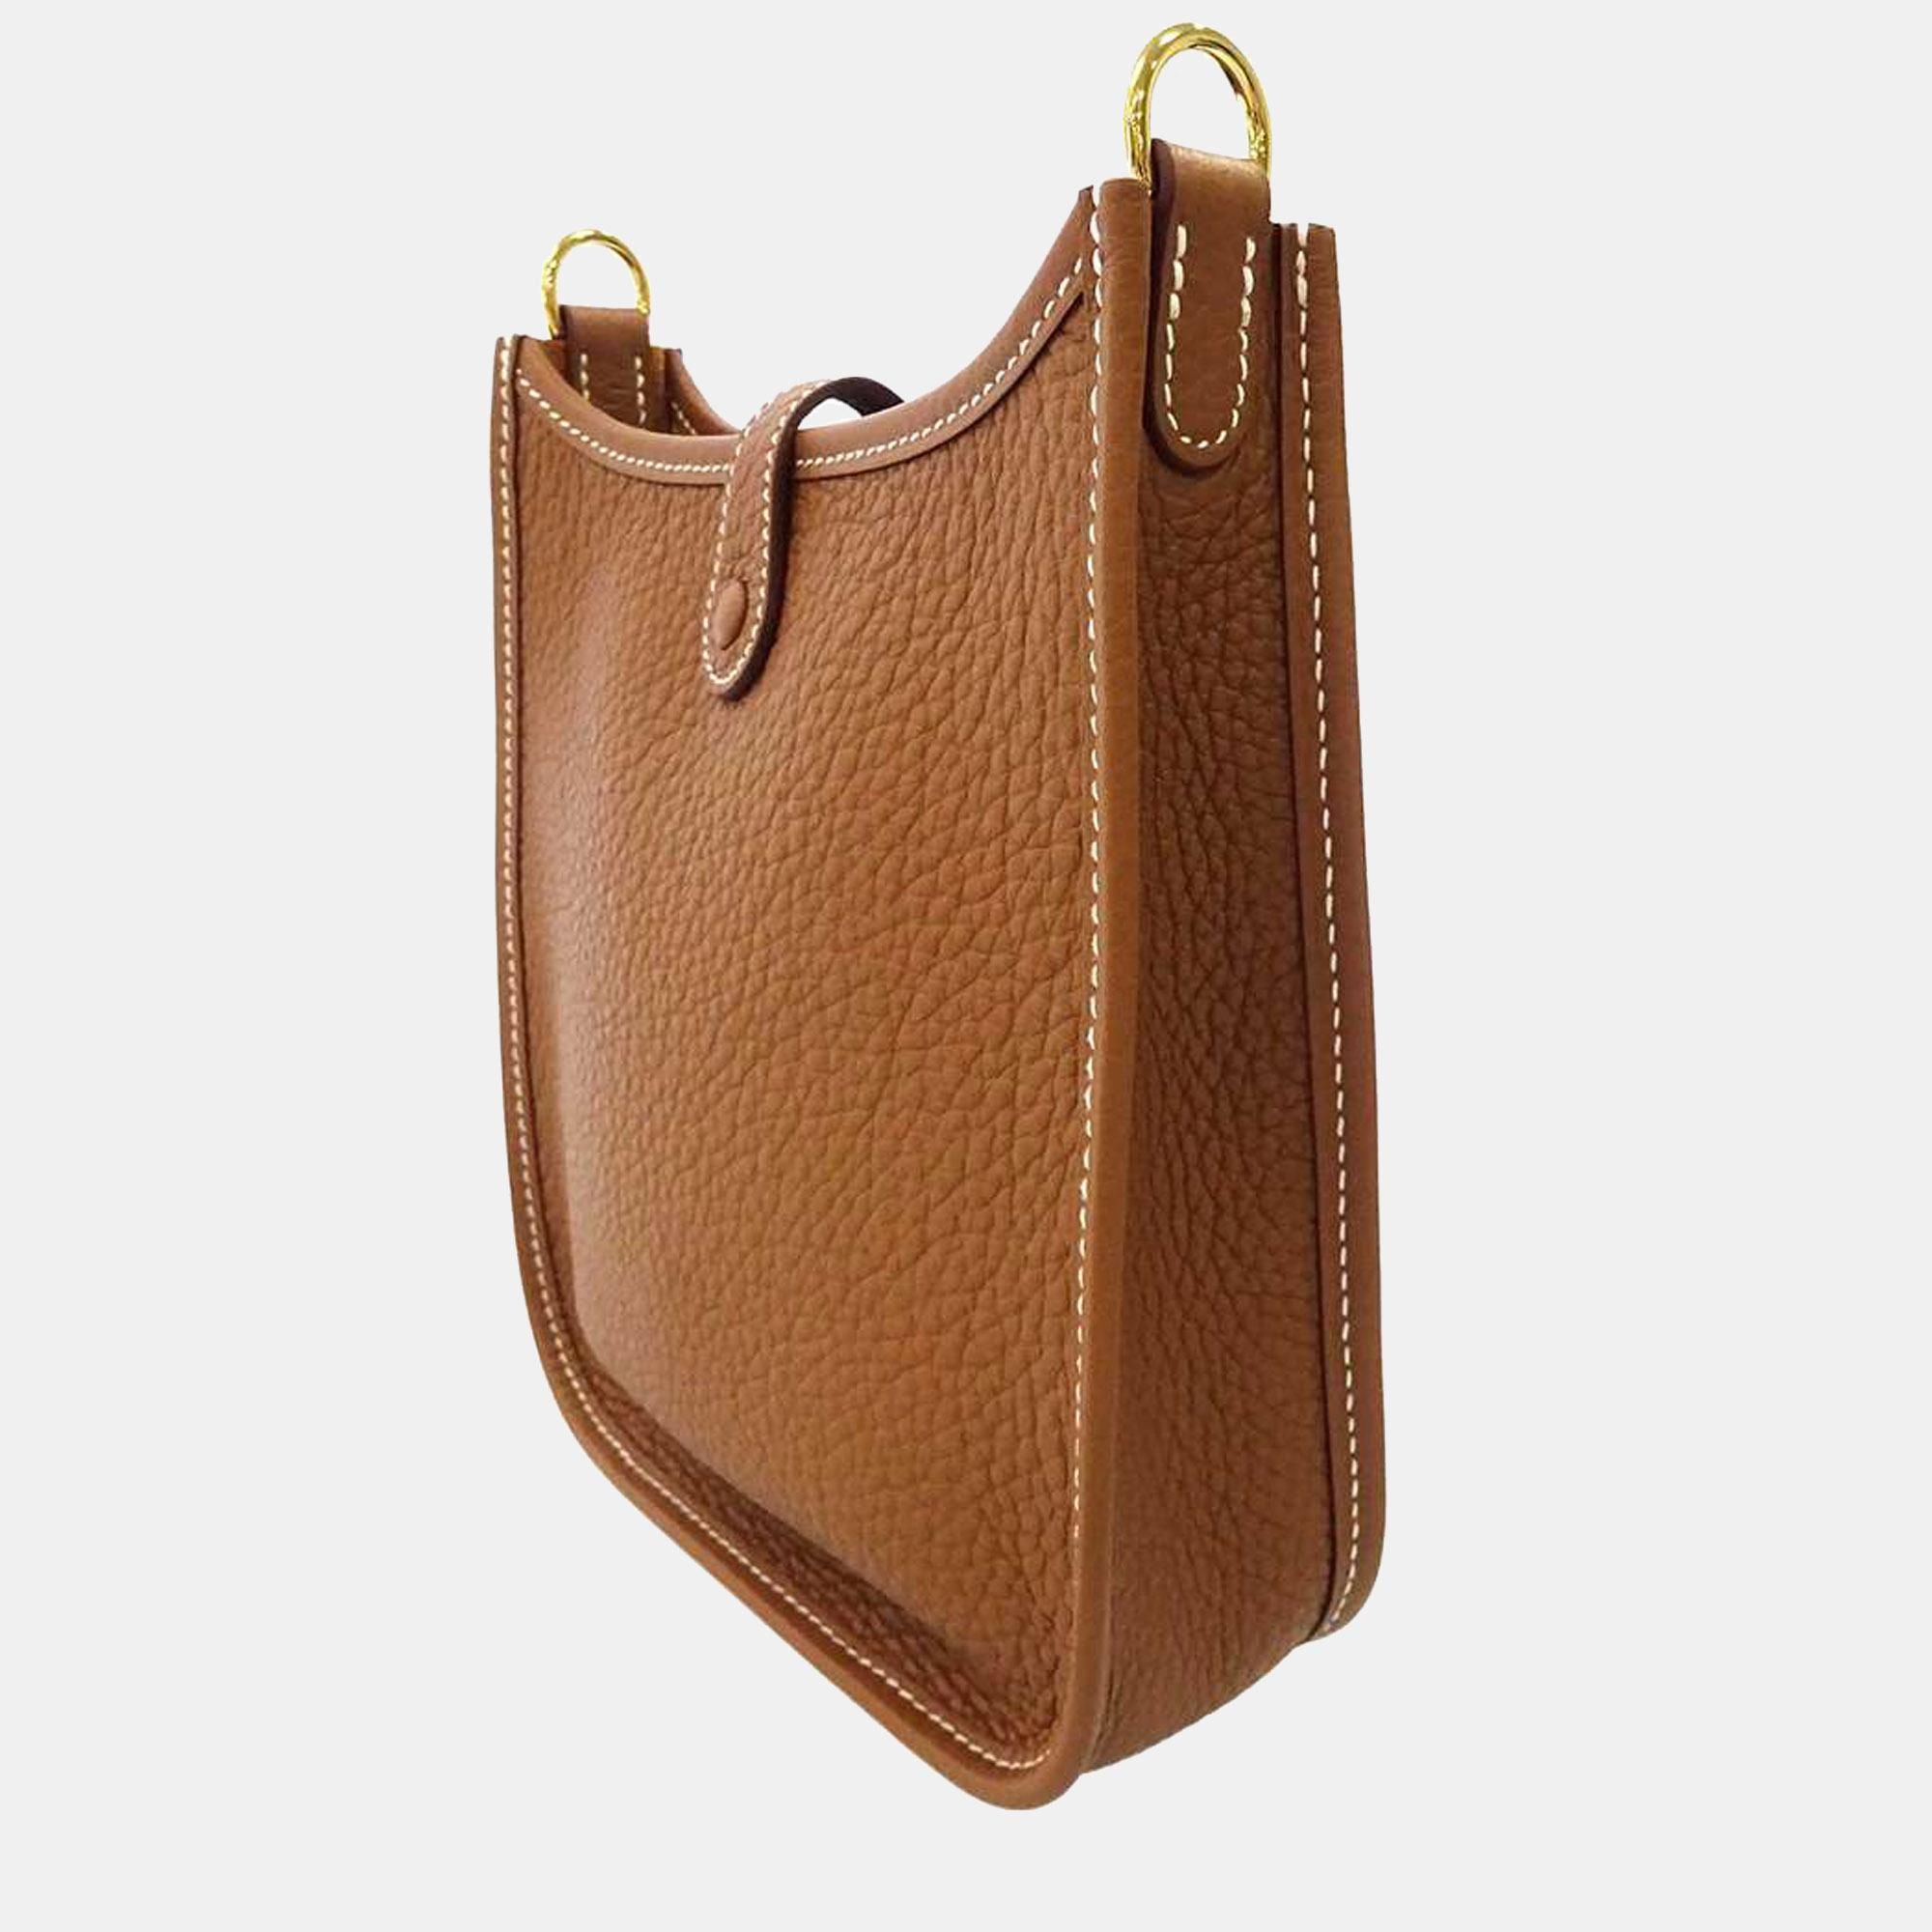 

Hermes Gold Taurillon Clemence Leather Evelyne TPM Shoulder Bag